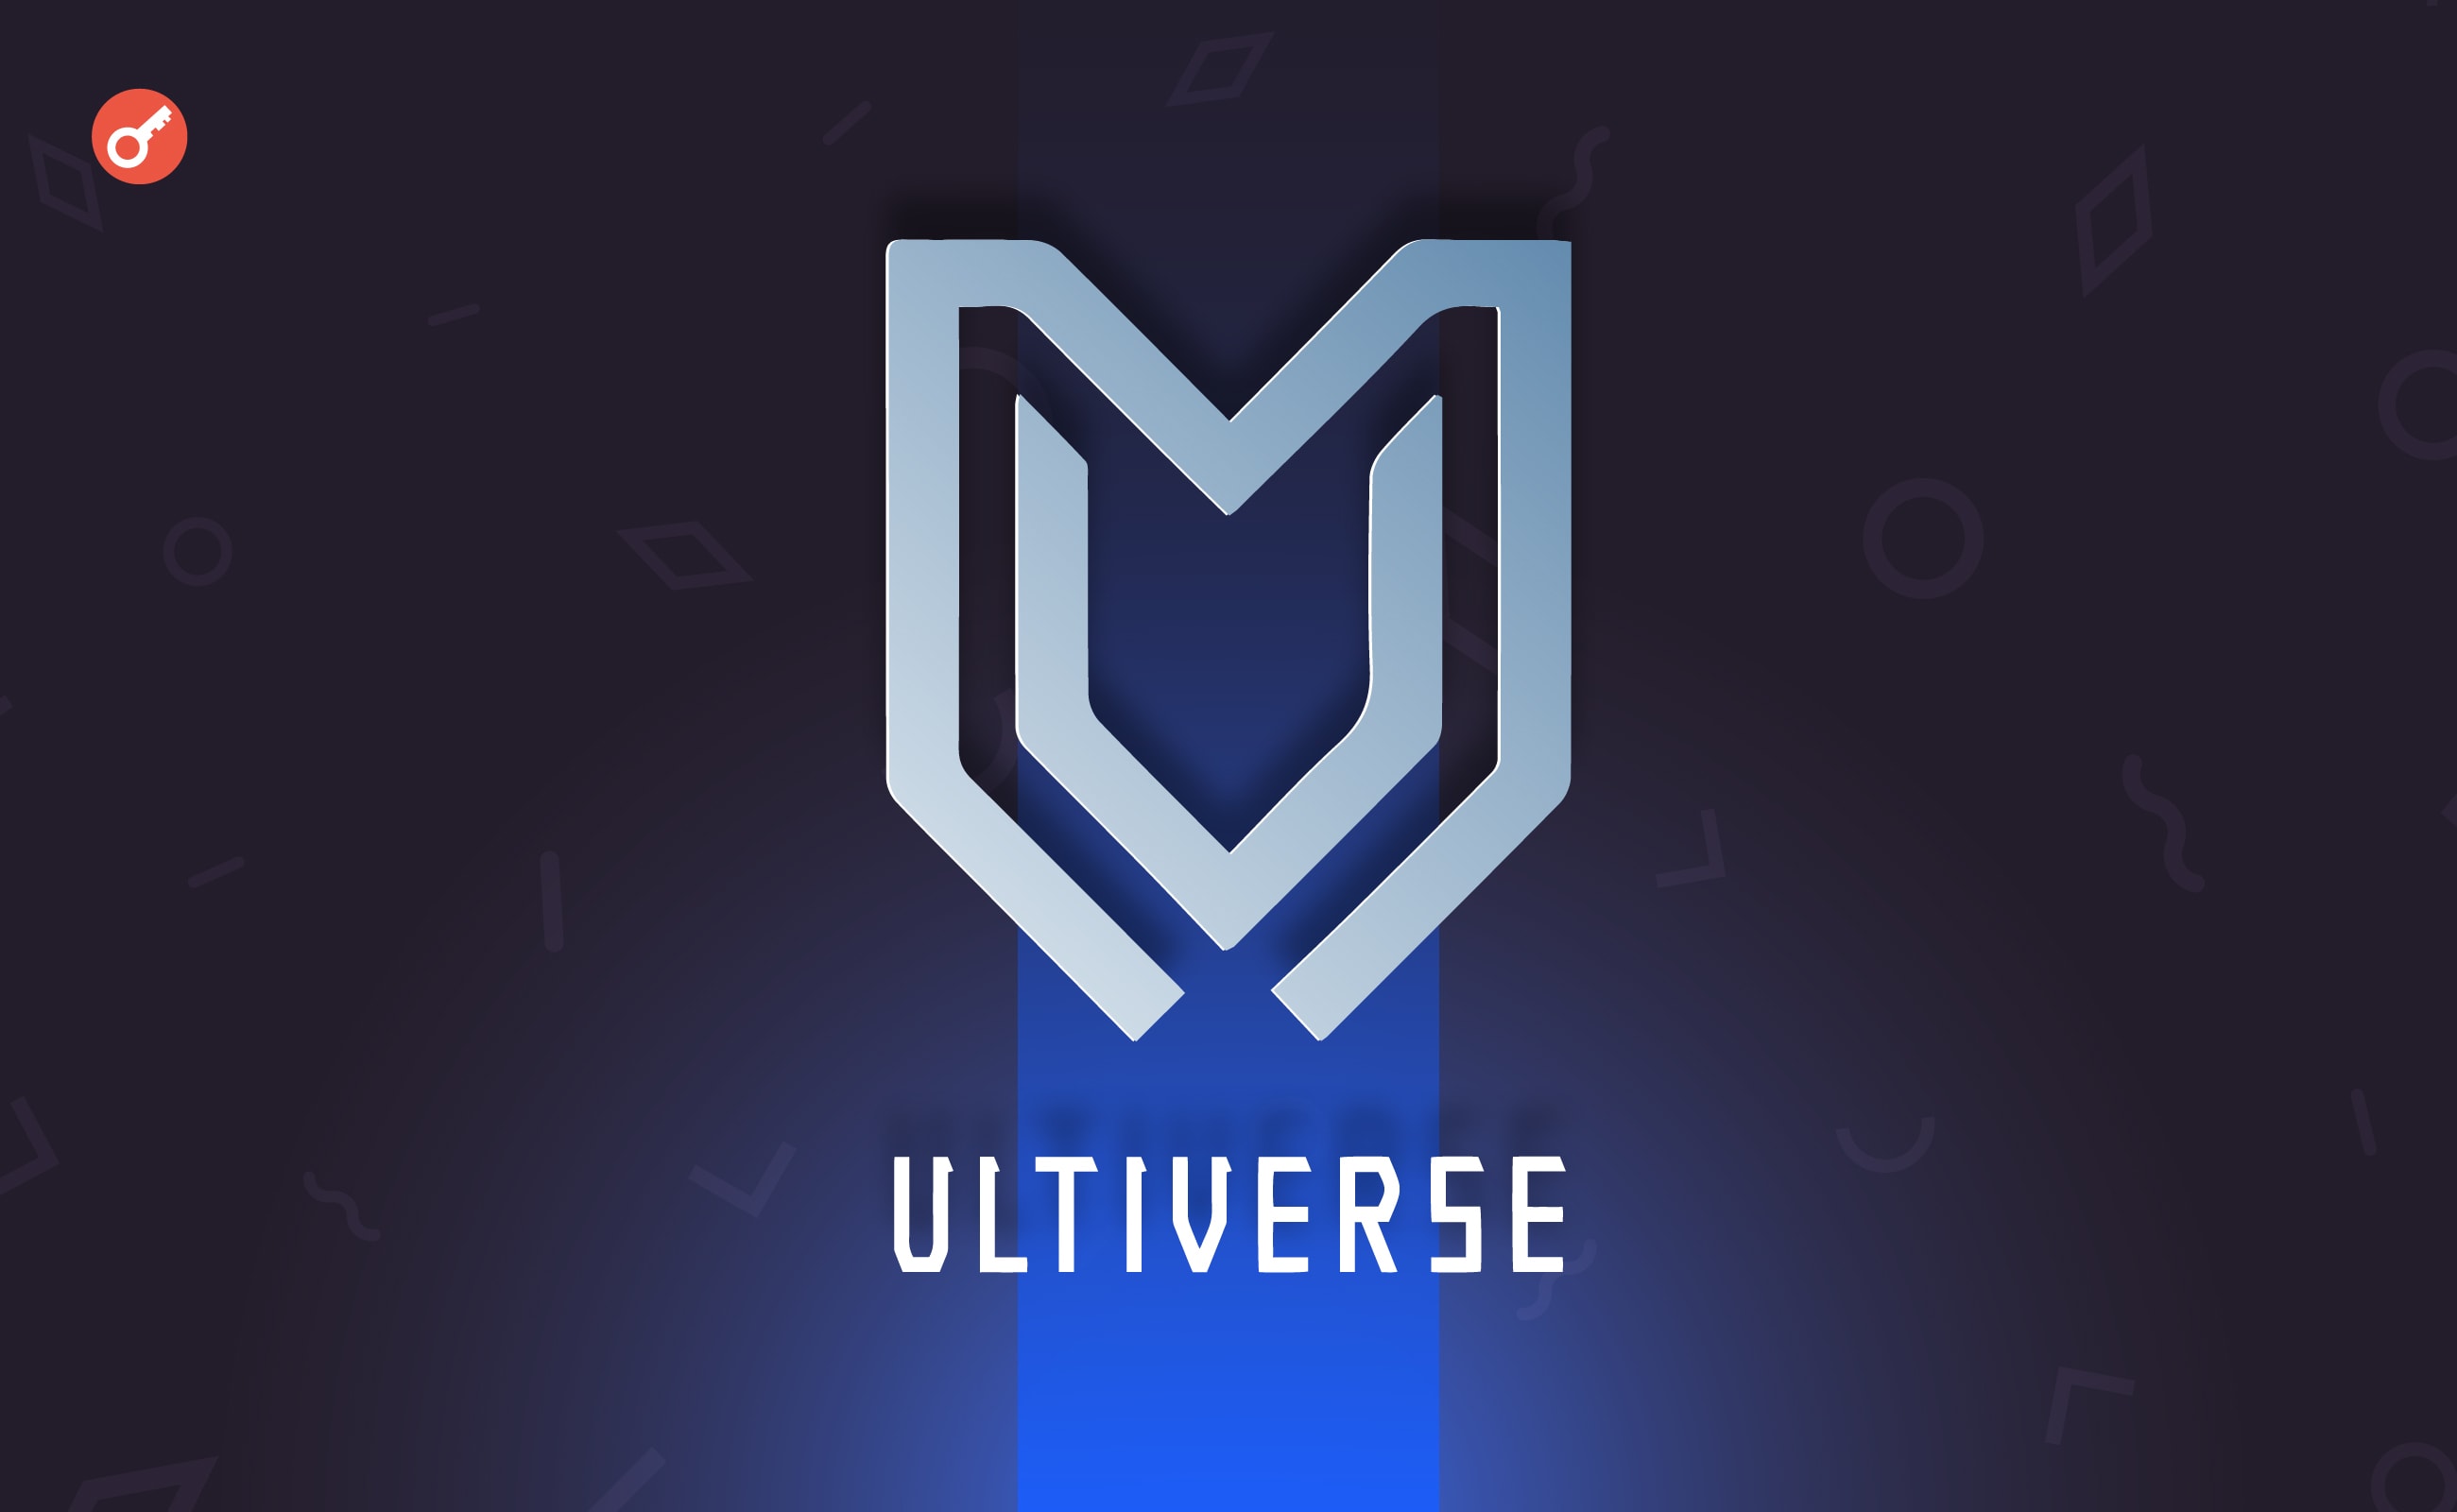 Ігрова платформа Ultiverse залучила $4 млн за оцінки в $150 млн. Головний колаж новини.